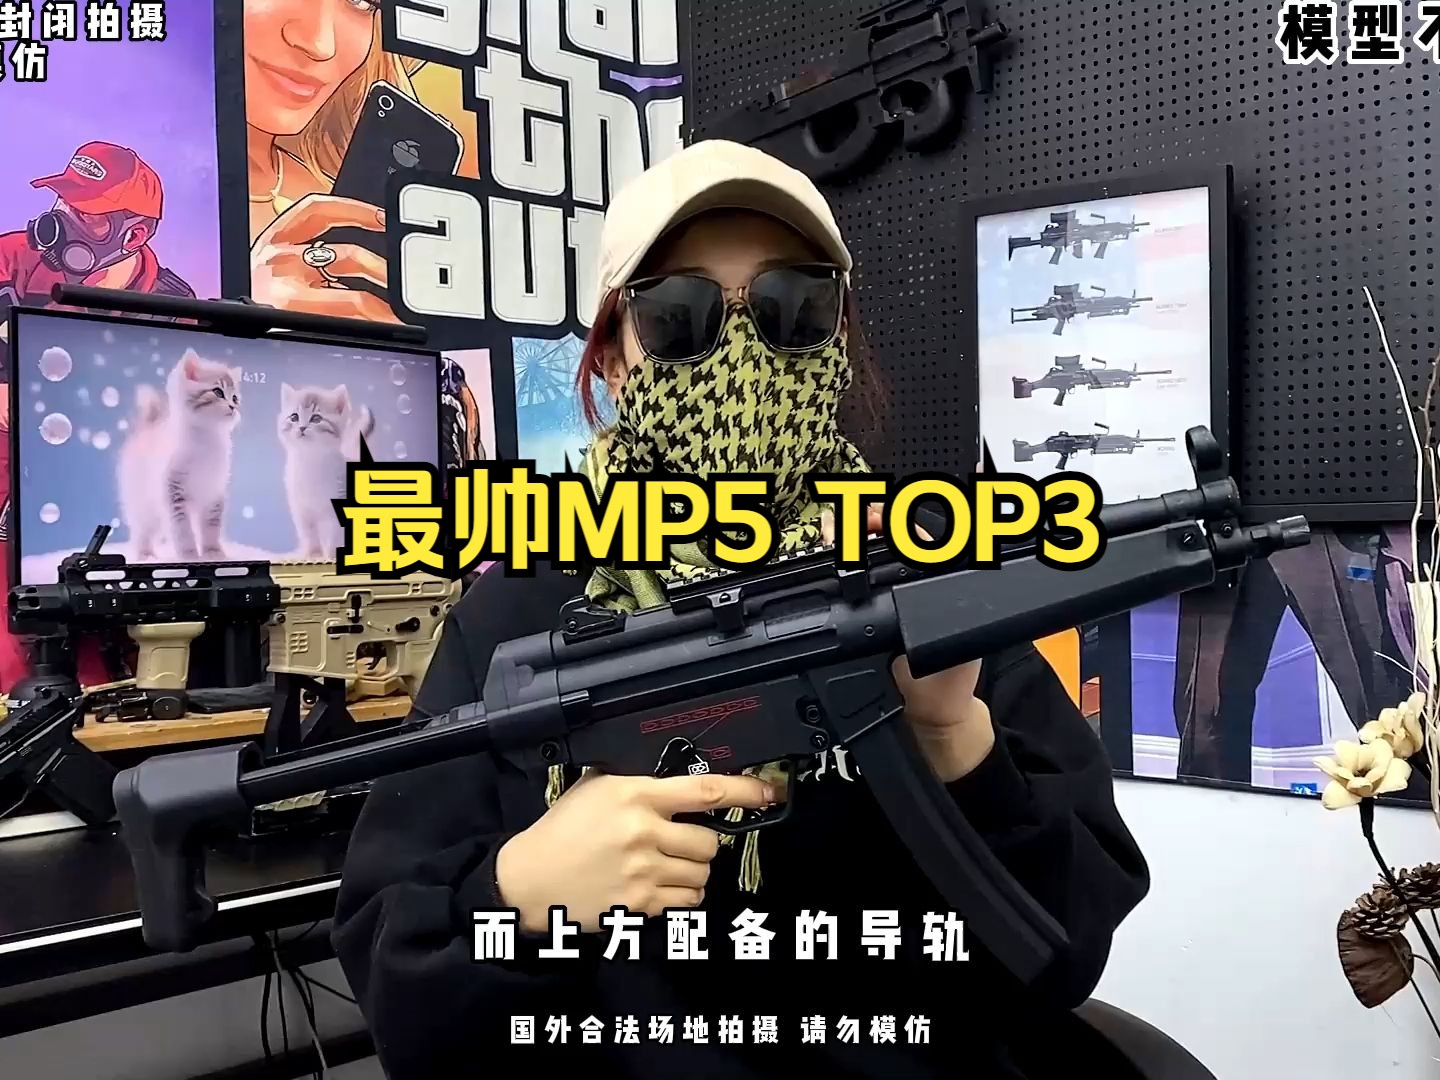 盘点最帅MP5 TOP3